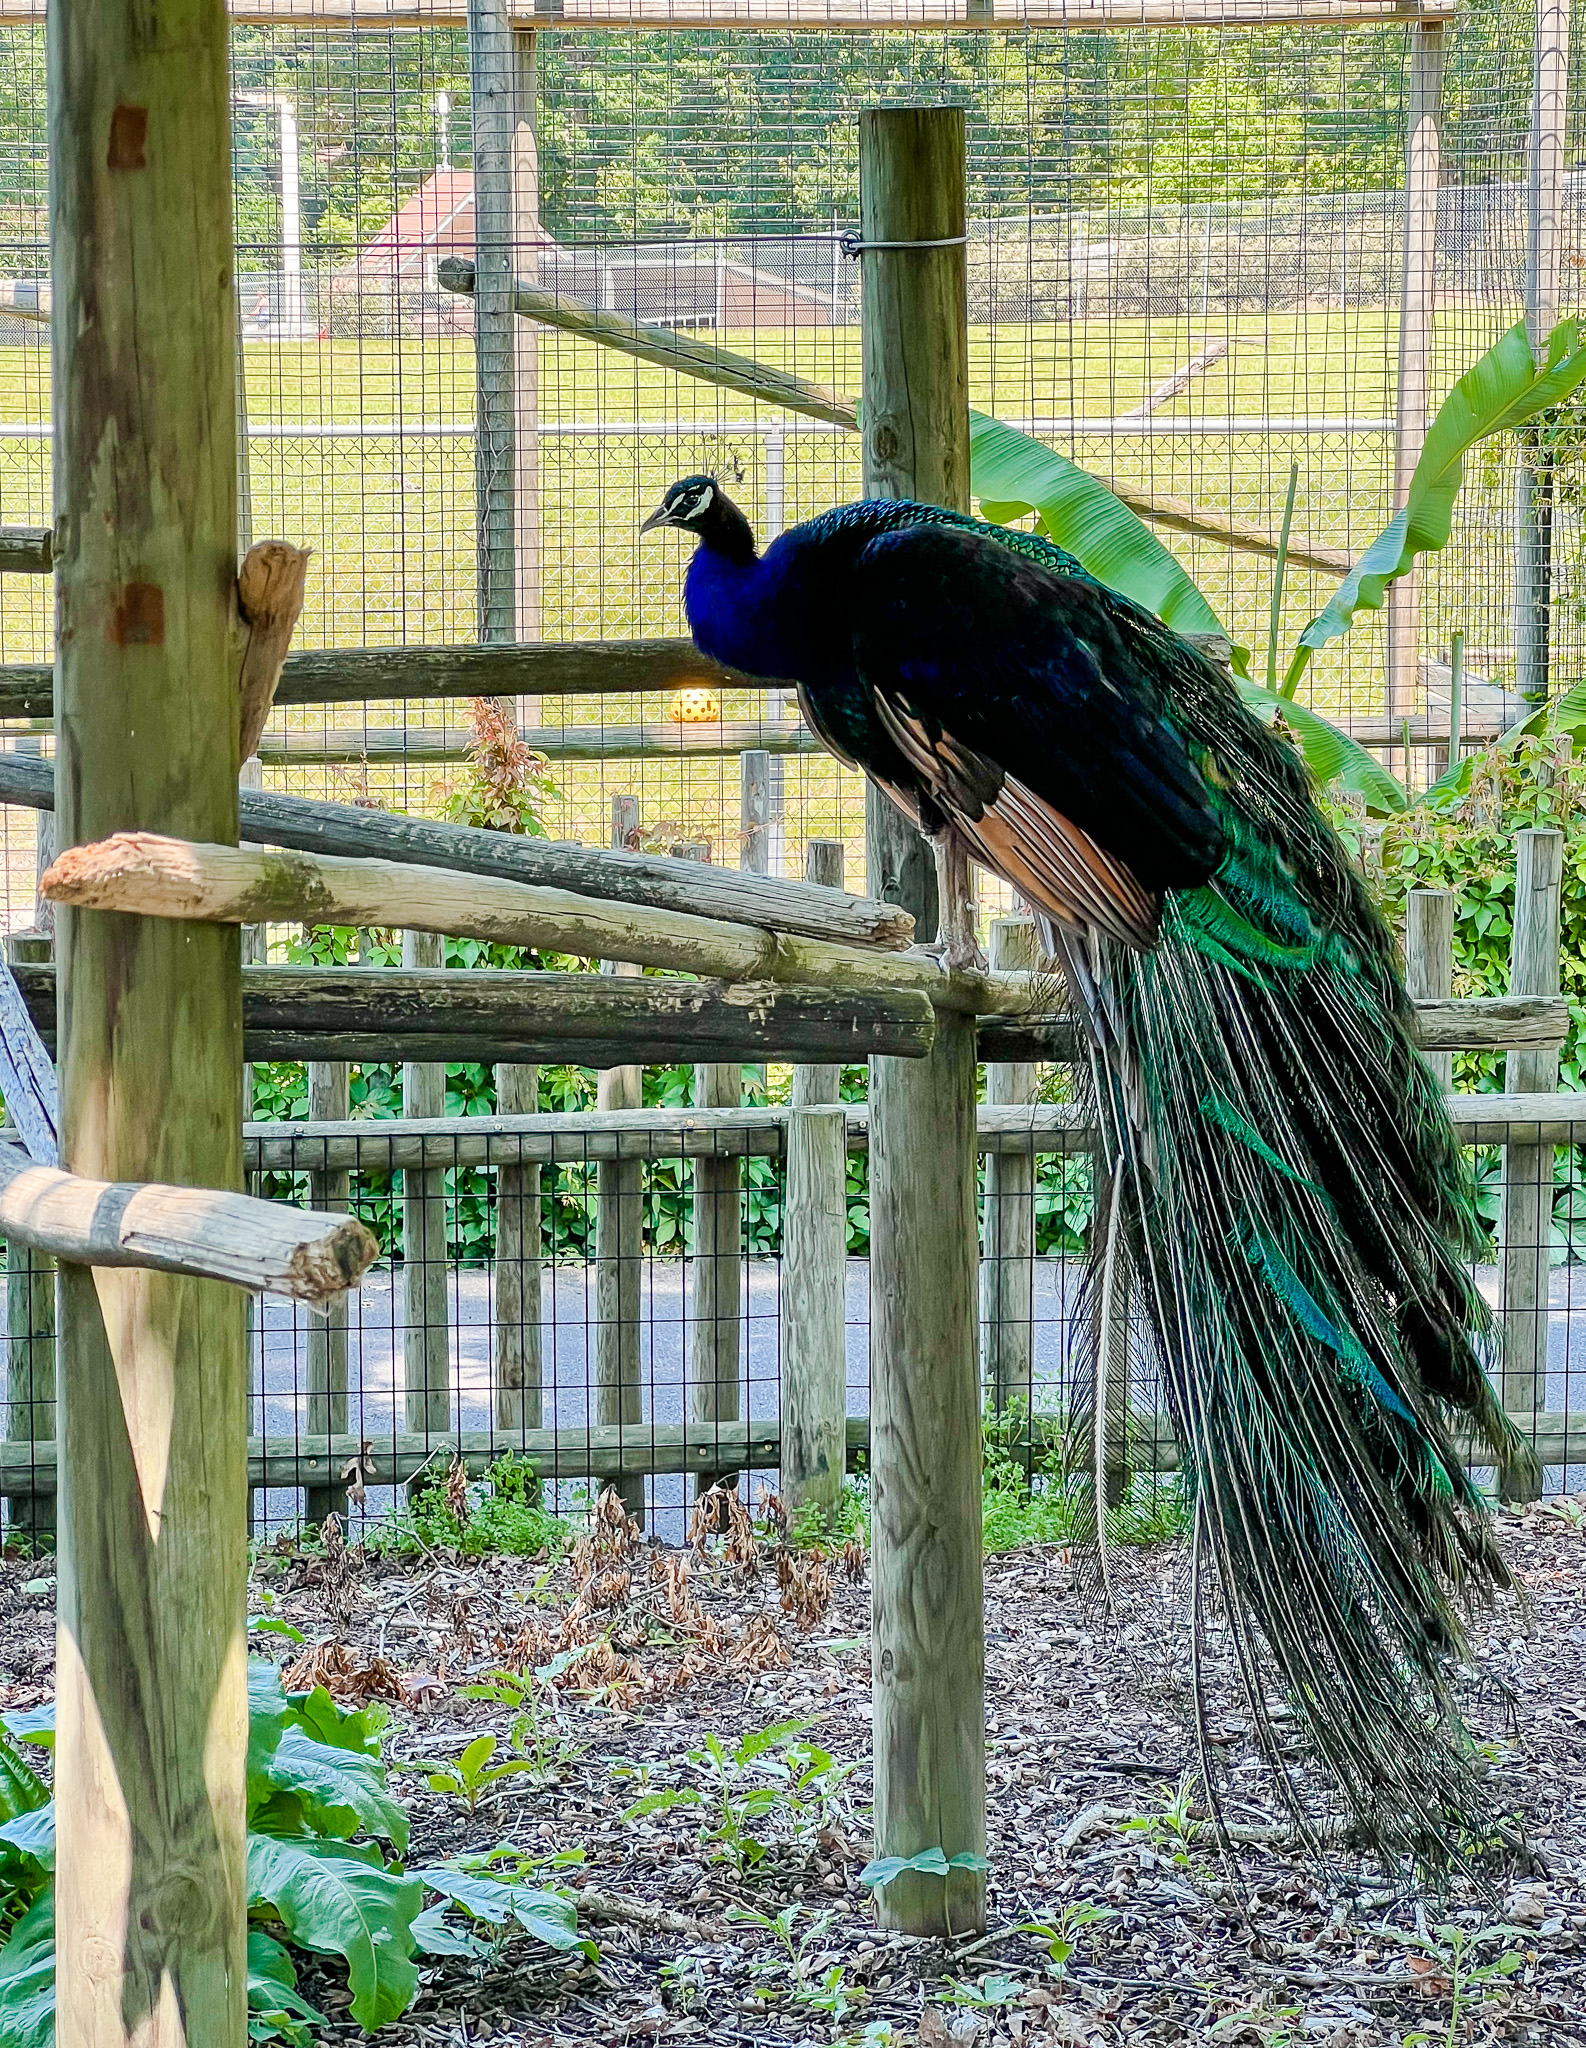 peacock  at richmond zoo